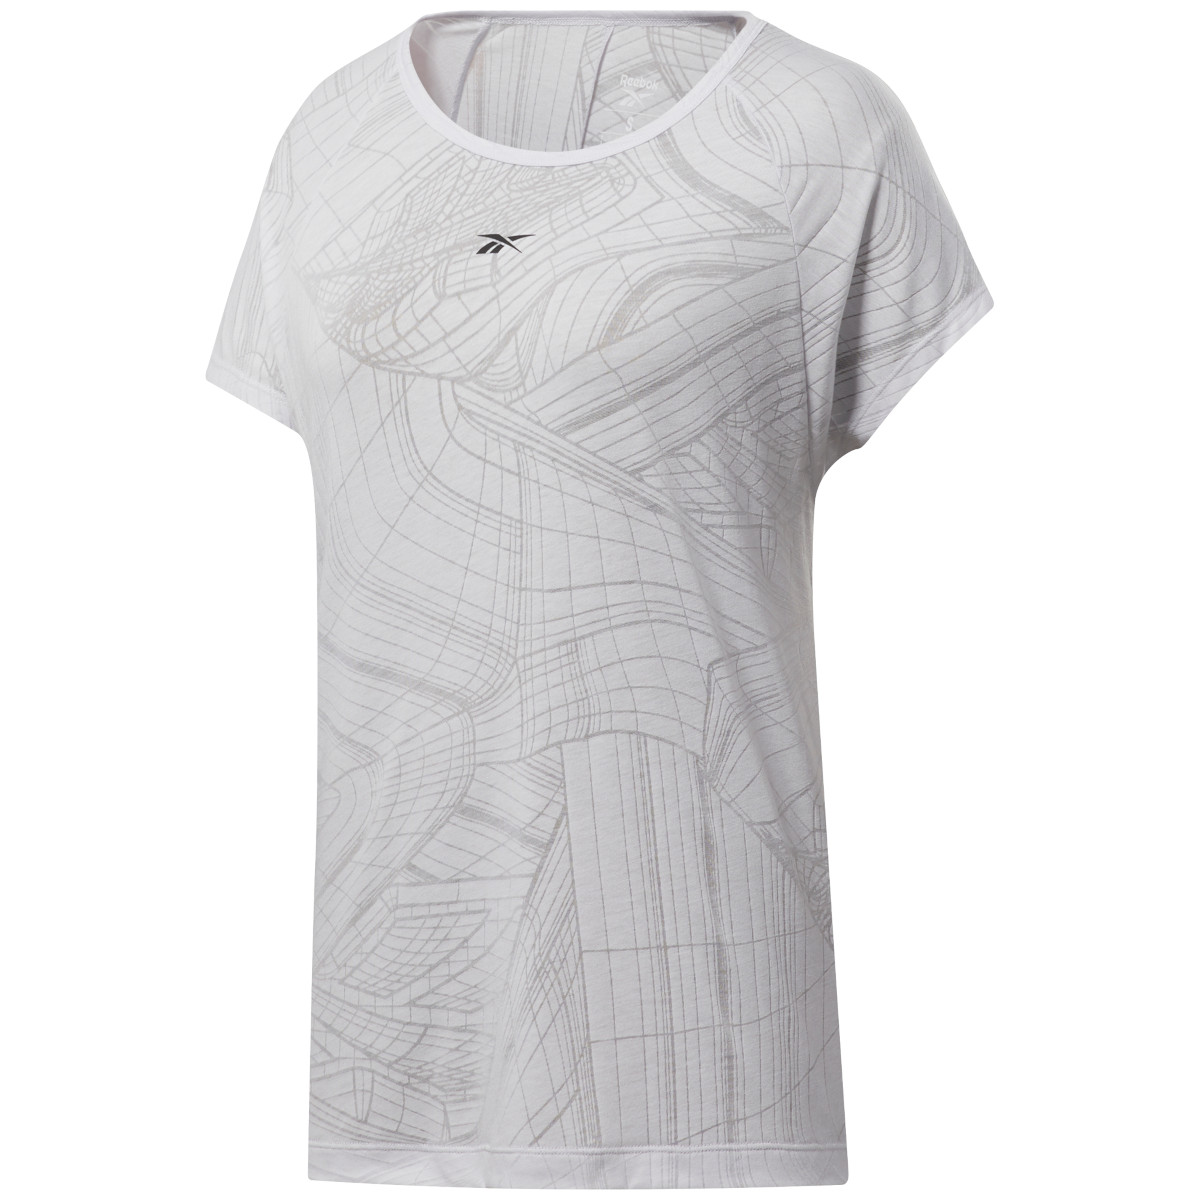 Productfoto van Reebok Burnout T-Shirt Dames - porcelain FT0805